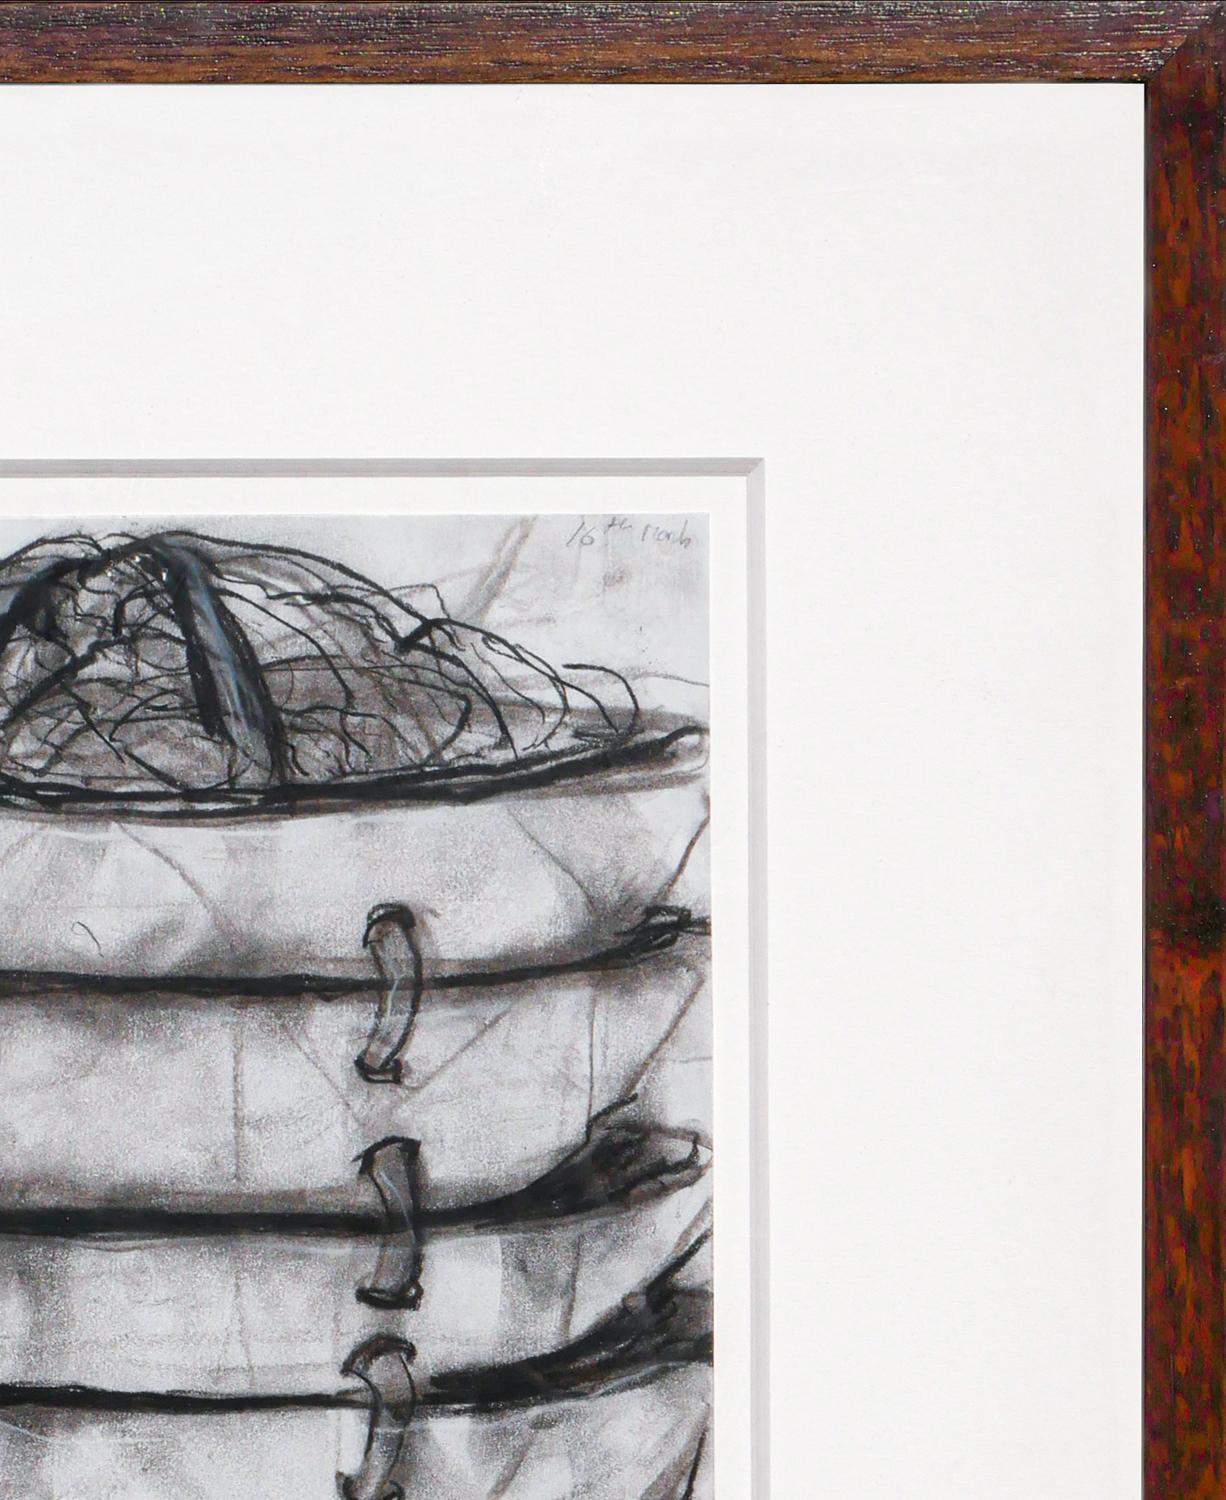 Monochromatische abstrakte Stilllebenzeichnung von Janice Redman. Das Stück stellt einen Stapel von Schalen dar, die durch Schnüre verbunden sind. Signiert vom Künstler in der rechten unteren Ecke. Gerahmt und mit Passepartout in einem modernen